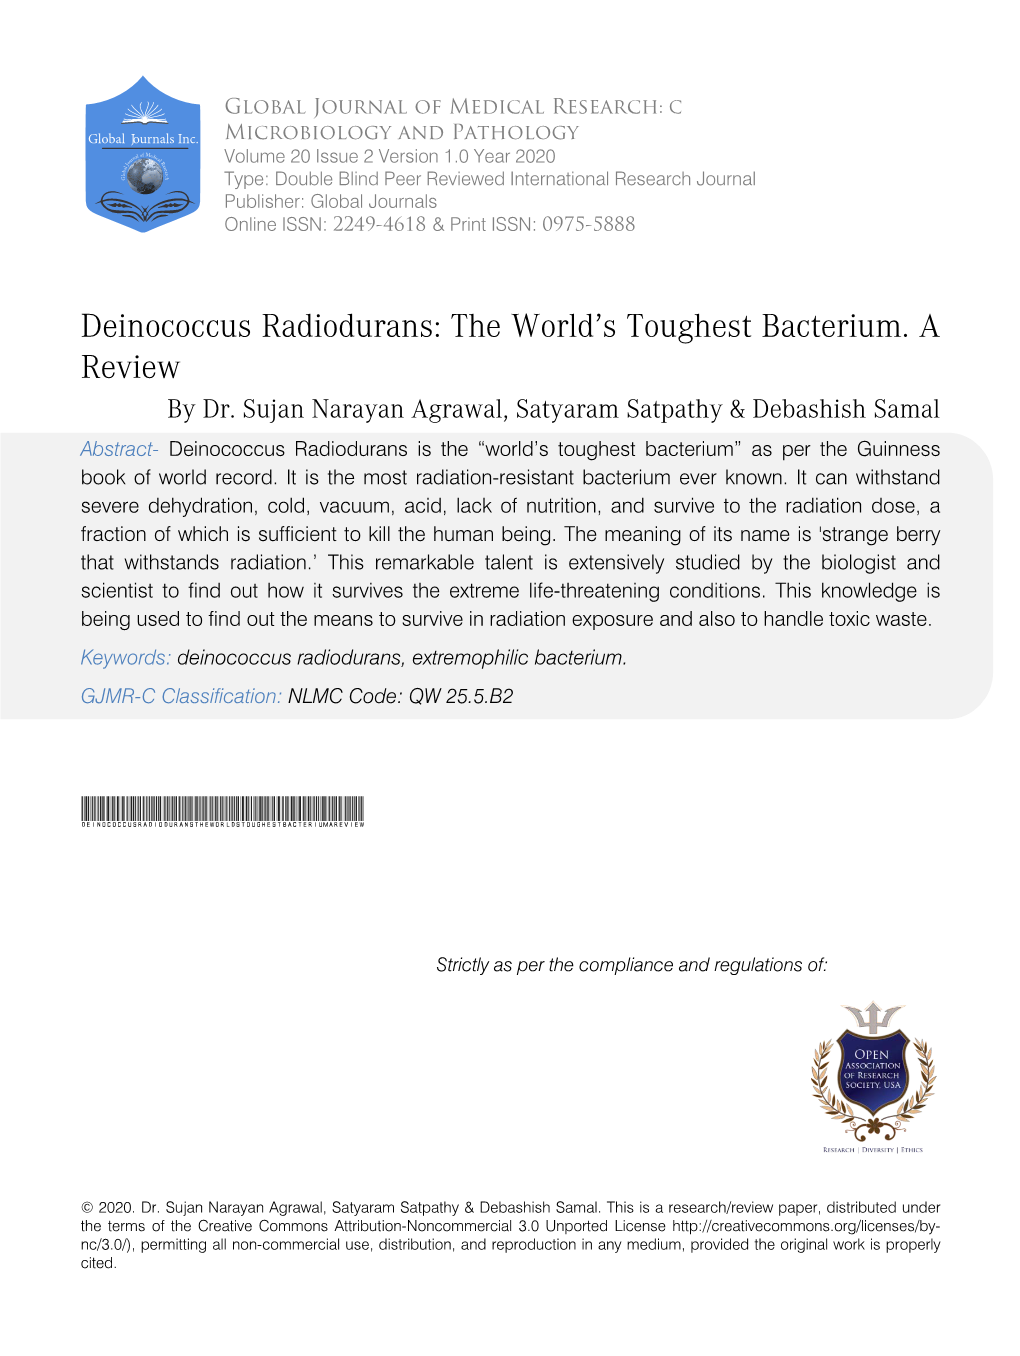 Deinococcus Radiodurans: the World’S Toughest Bacterium